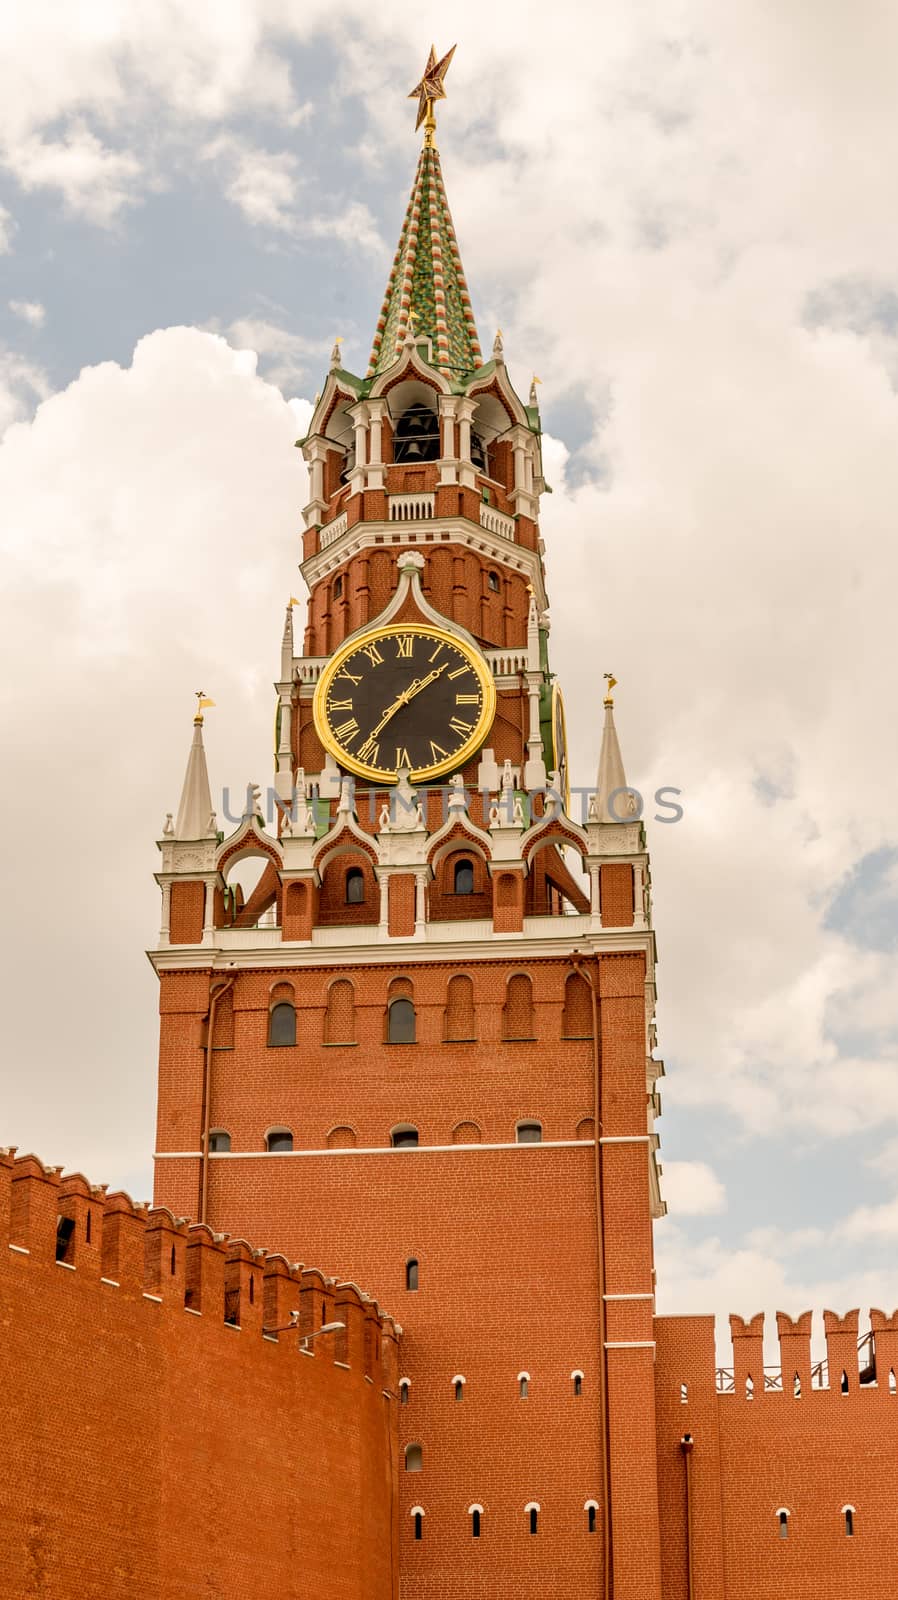 Clock tower at the Kremlin